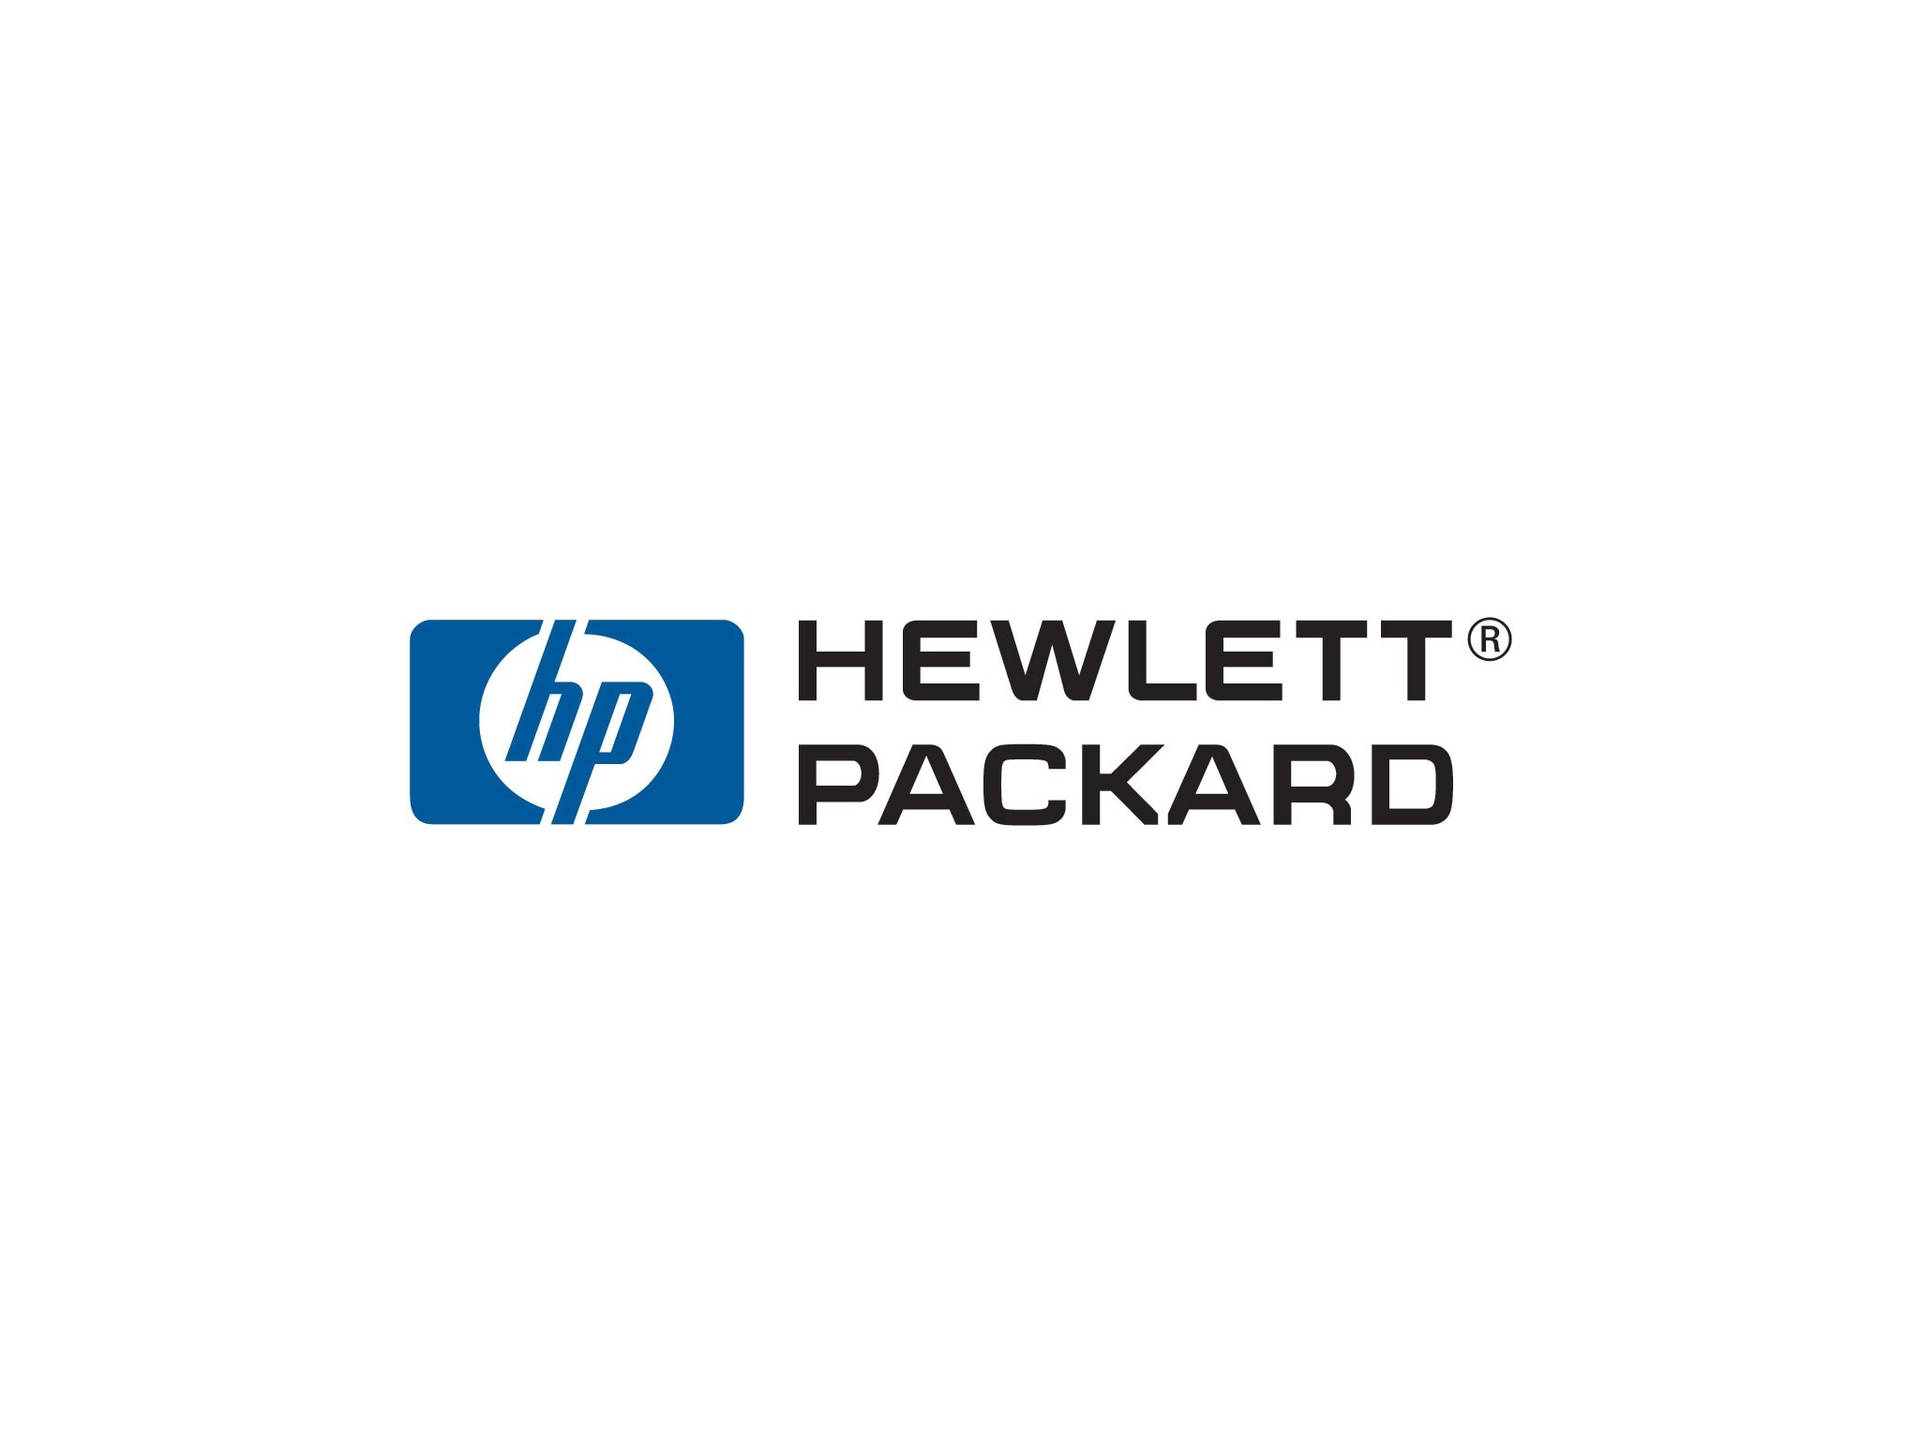 Hewlett-packard Hp Laptop Logo